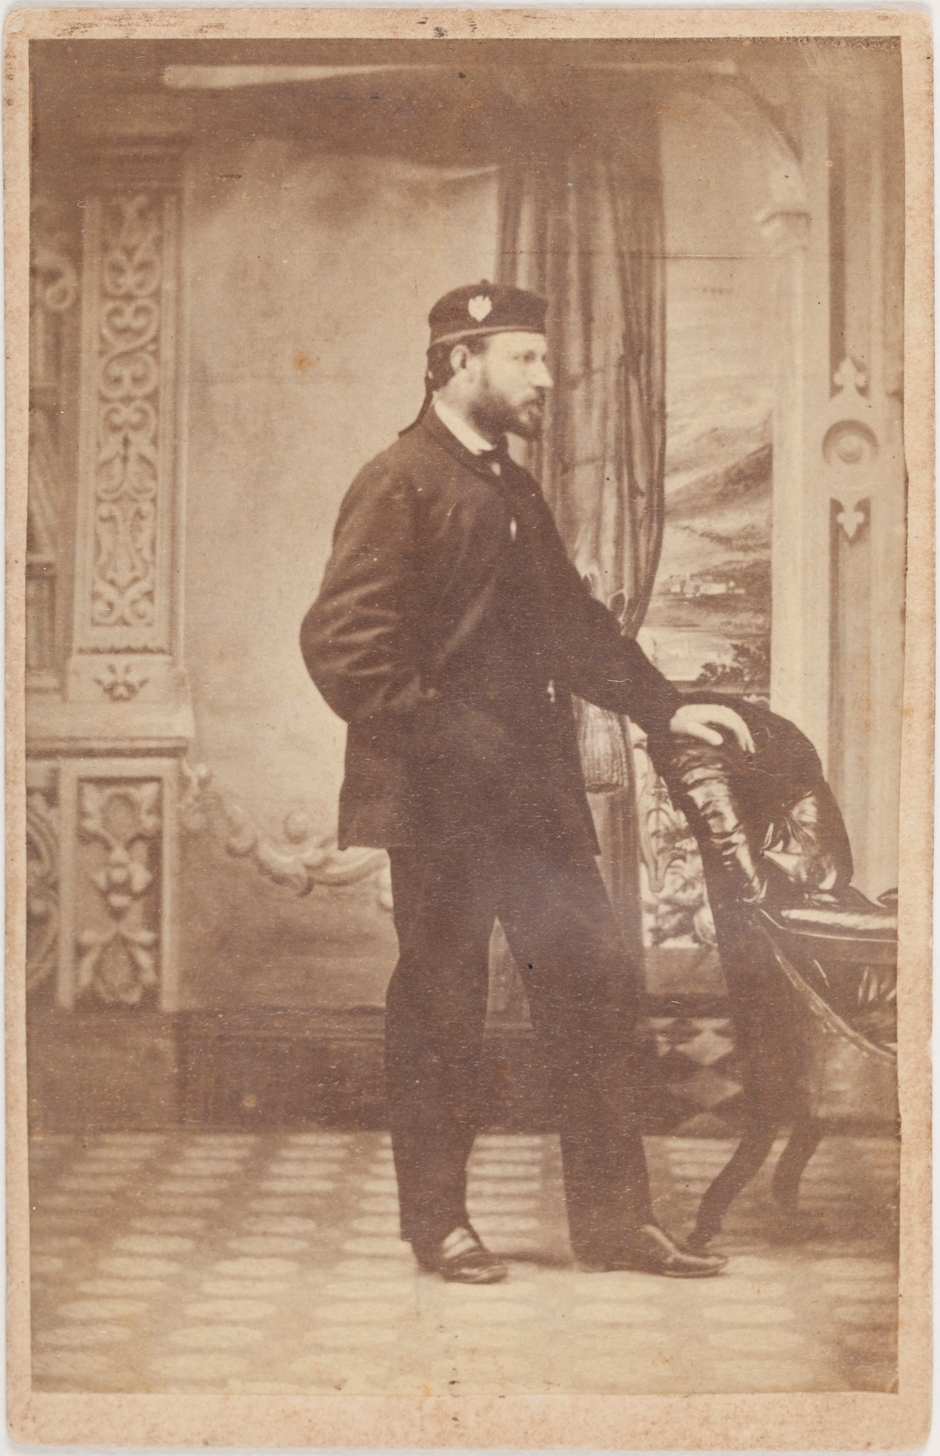 Kenneth McKenzie (c1835-1922), around 1862 / A. K. Thomson, Photographer